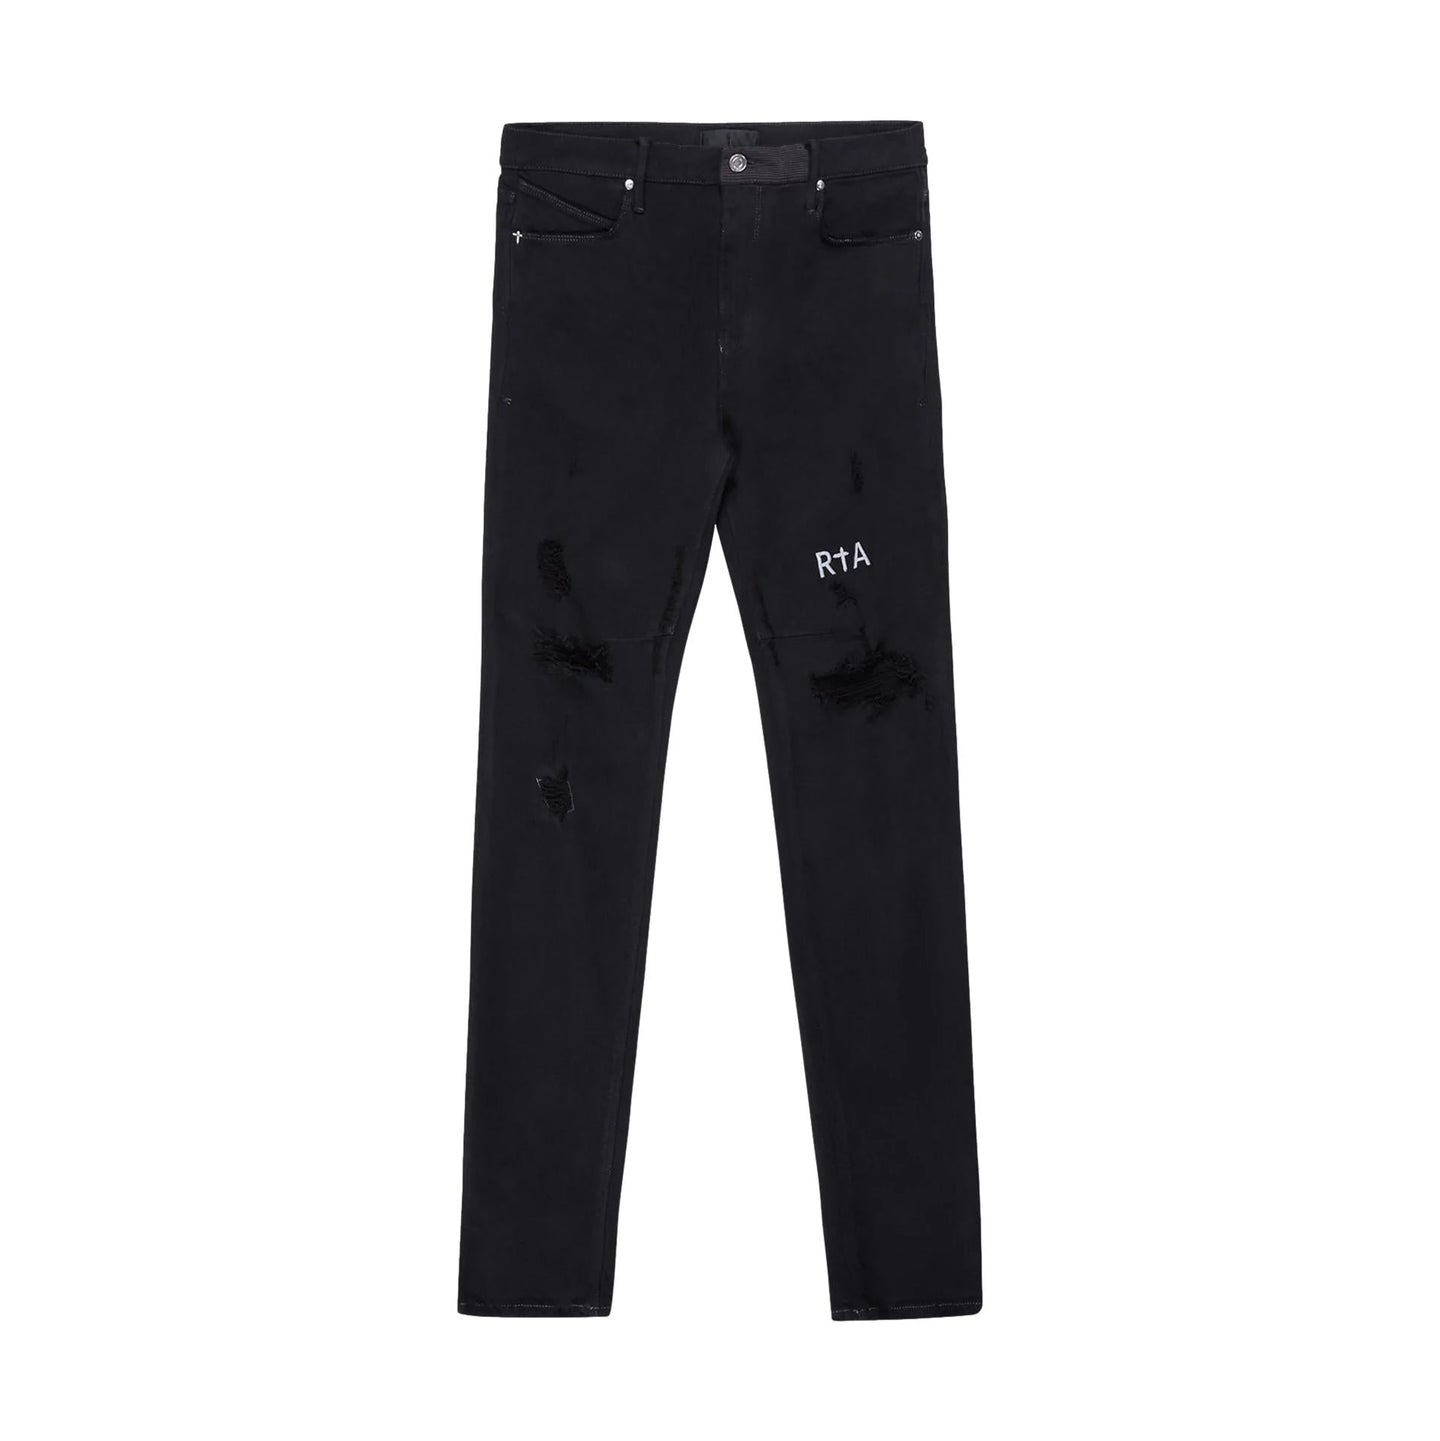 RTA - Bryant Blue Black Jeans - Clique Apparel